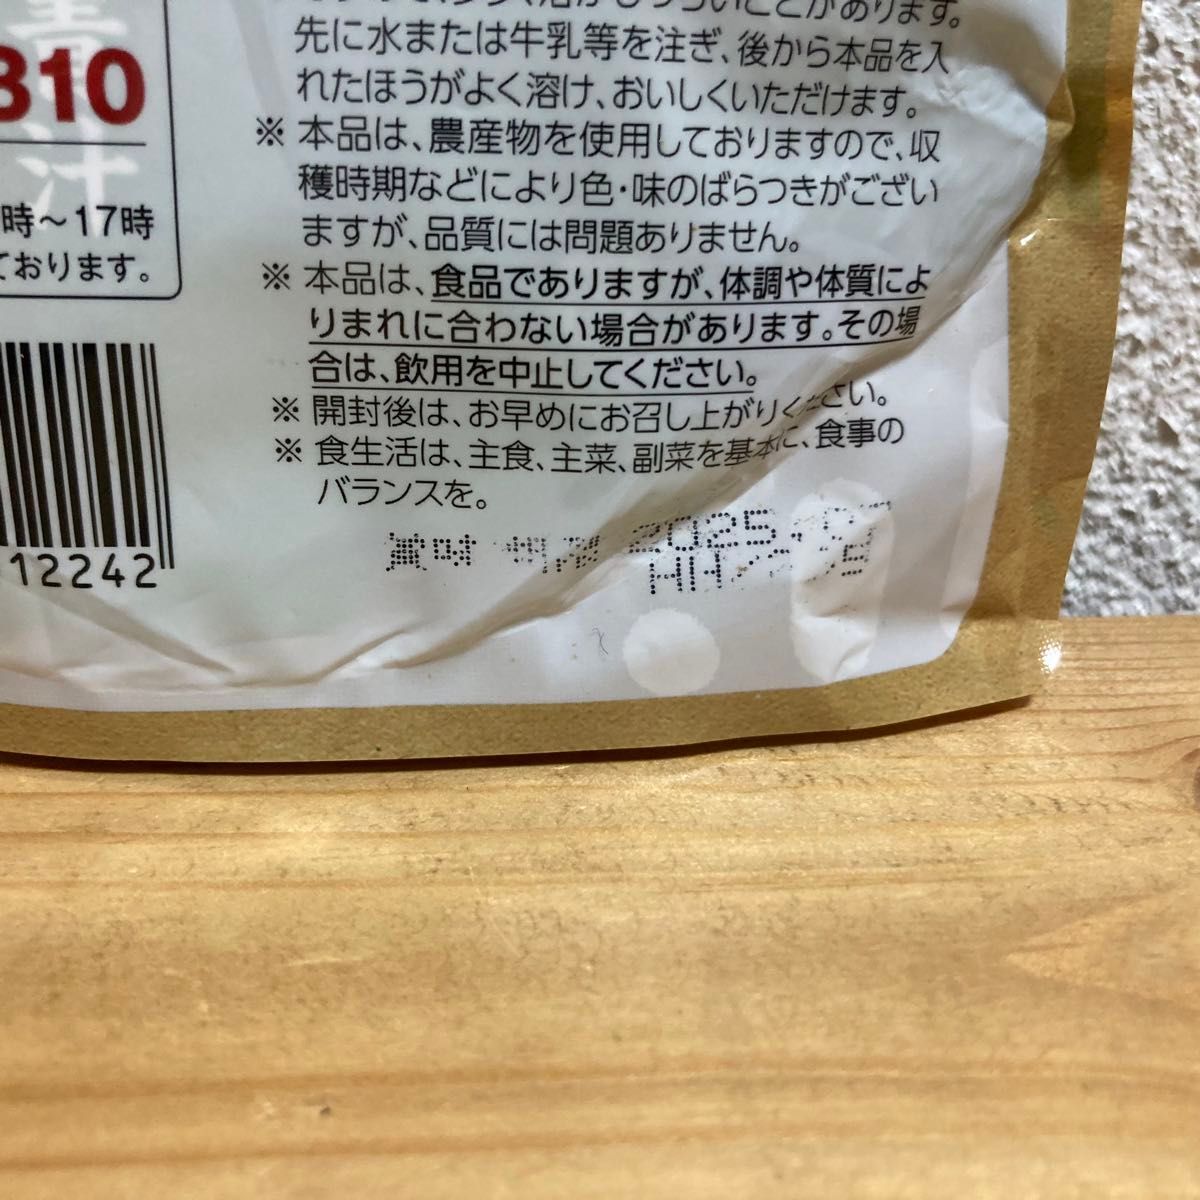 九州産野菜青汁